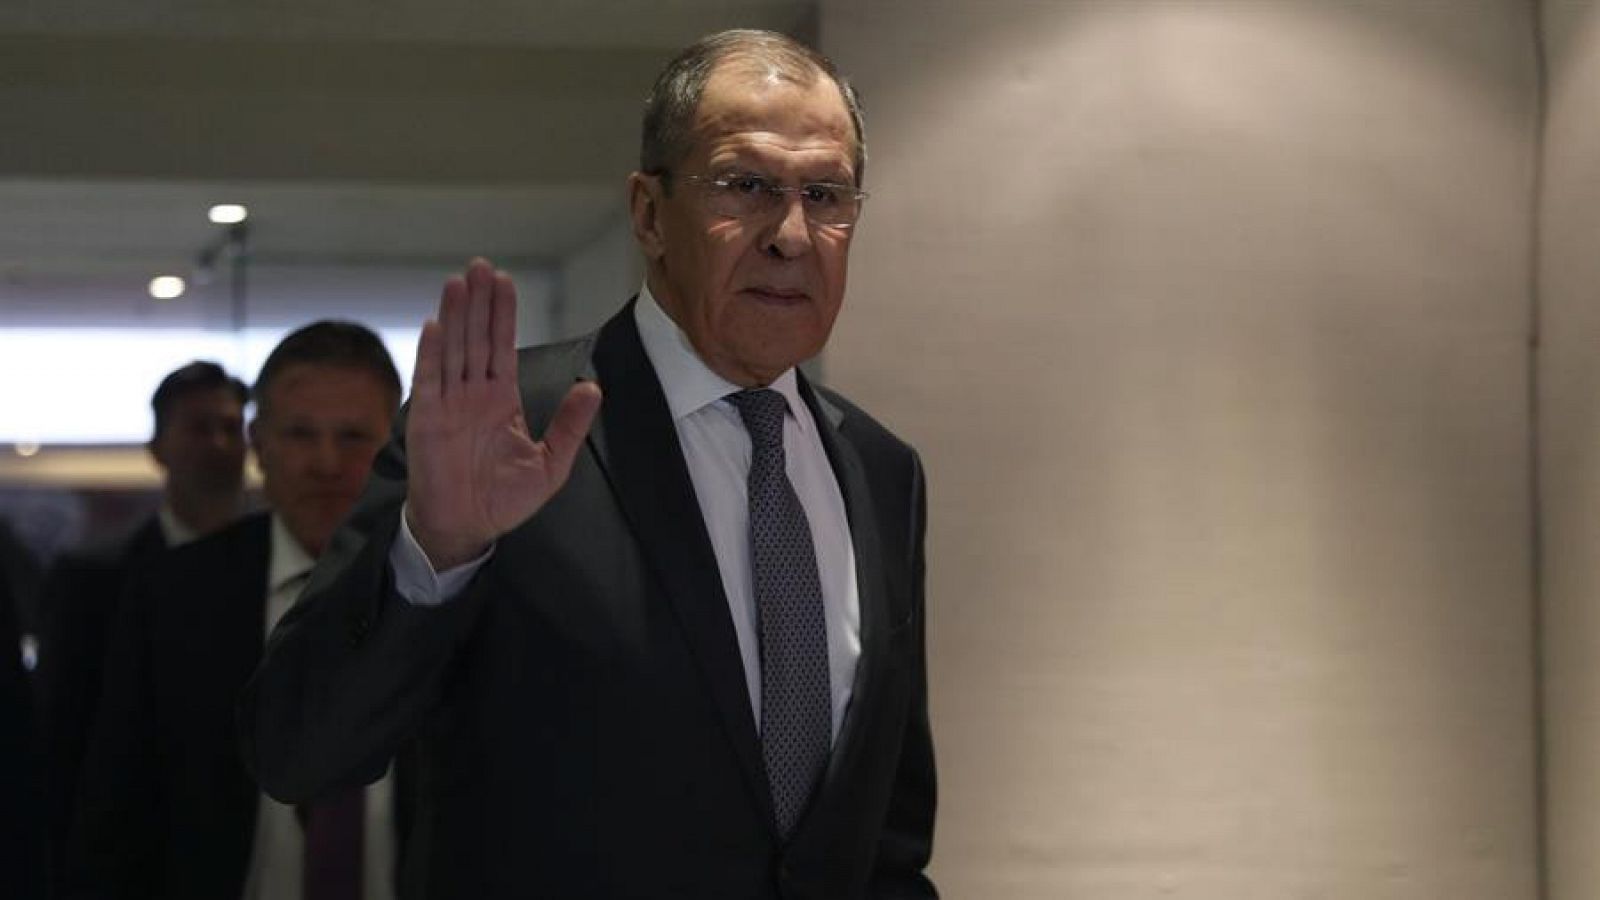 El ministro ruso de Exteriores, Serguéi Lavrov, saluda en un pasillo tras una rueda de prensa en México el pasado mes de febrero.